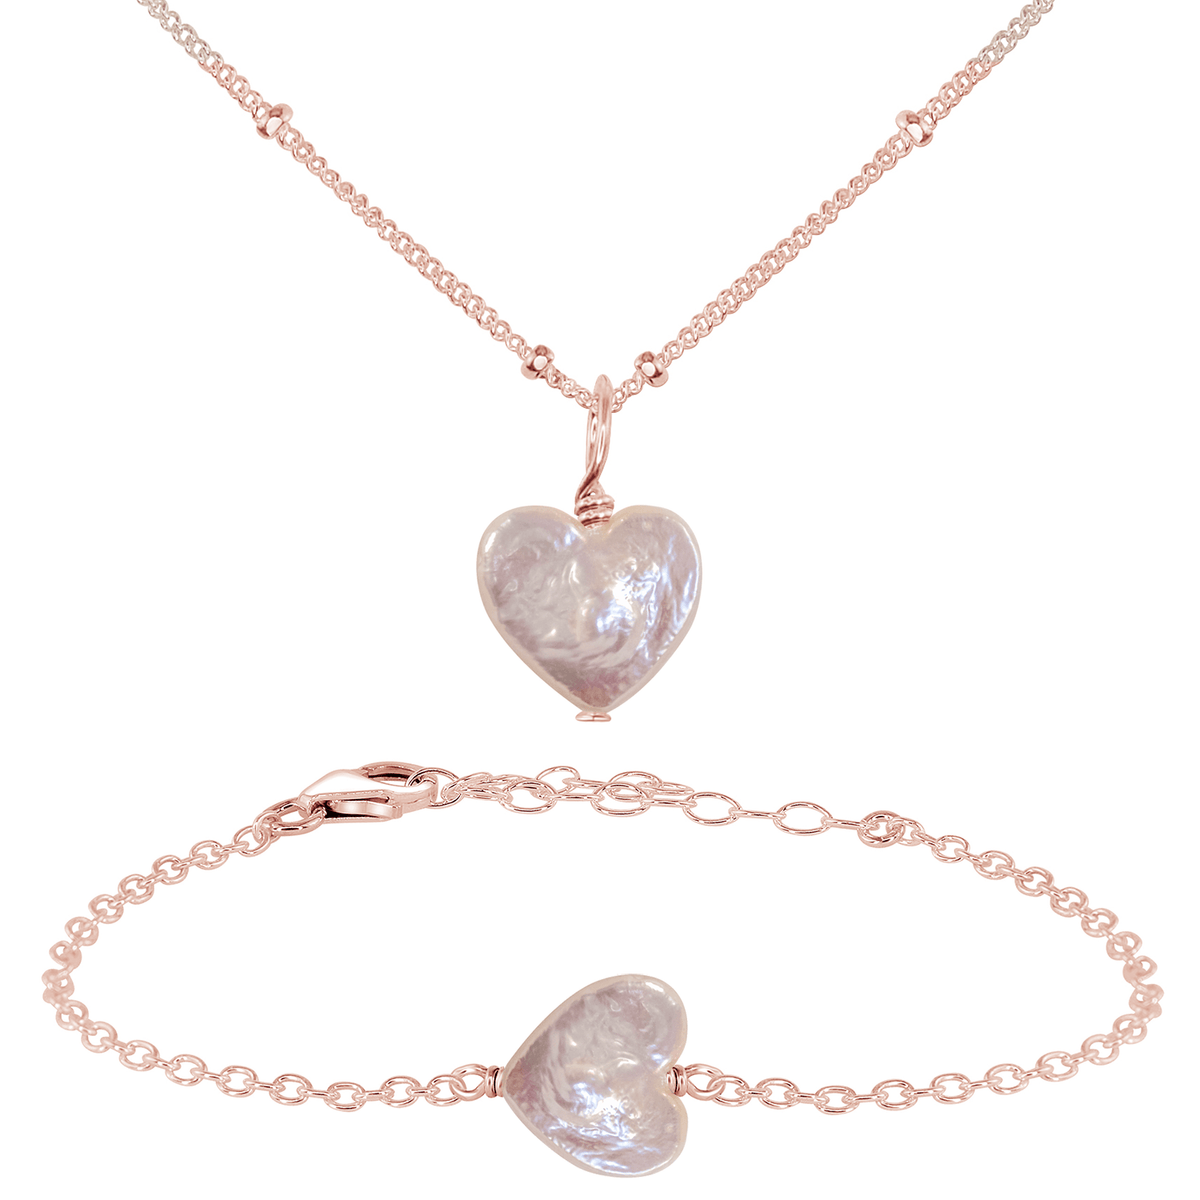 Freshwater Pearl Heart Jewellery Set - Freshwater Pearl Heart Jewellery Set - 14k Rose Gold Fill / Satellite / Necklace & Bracelet - Luna Tide Handmade Crystal Jewellery